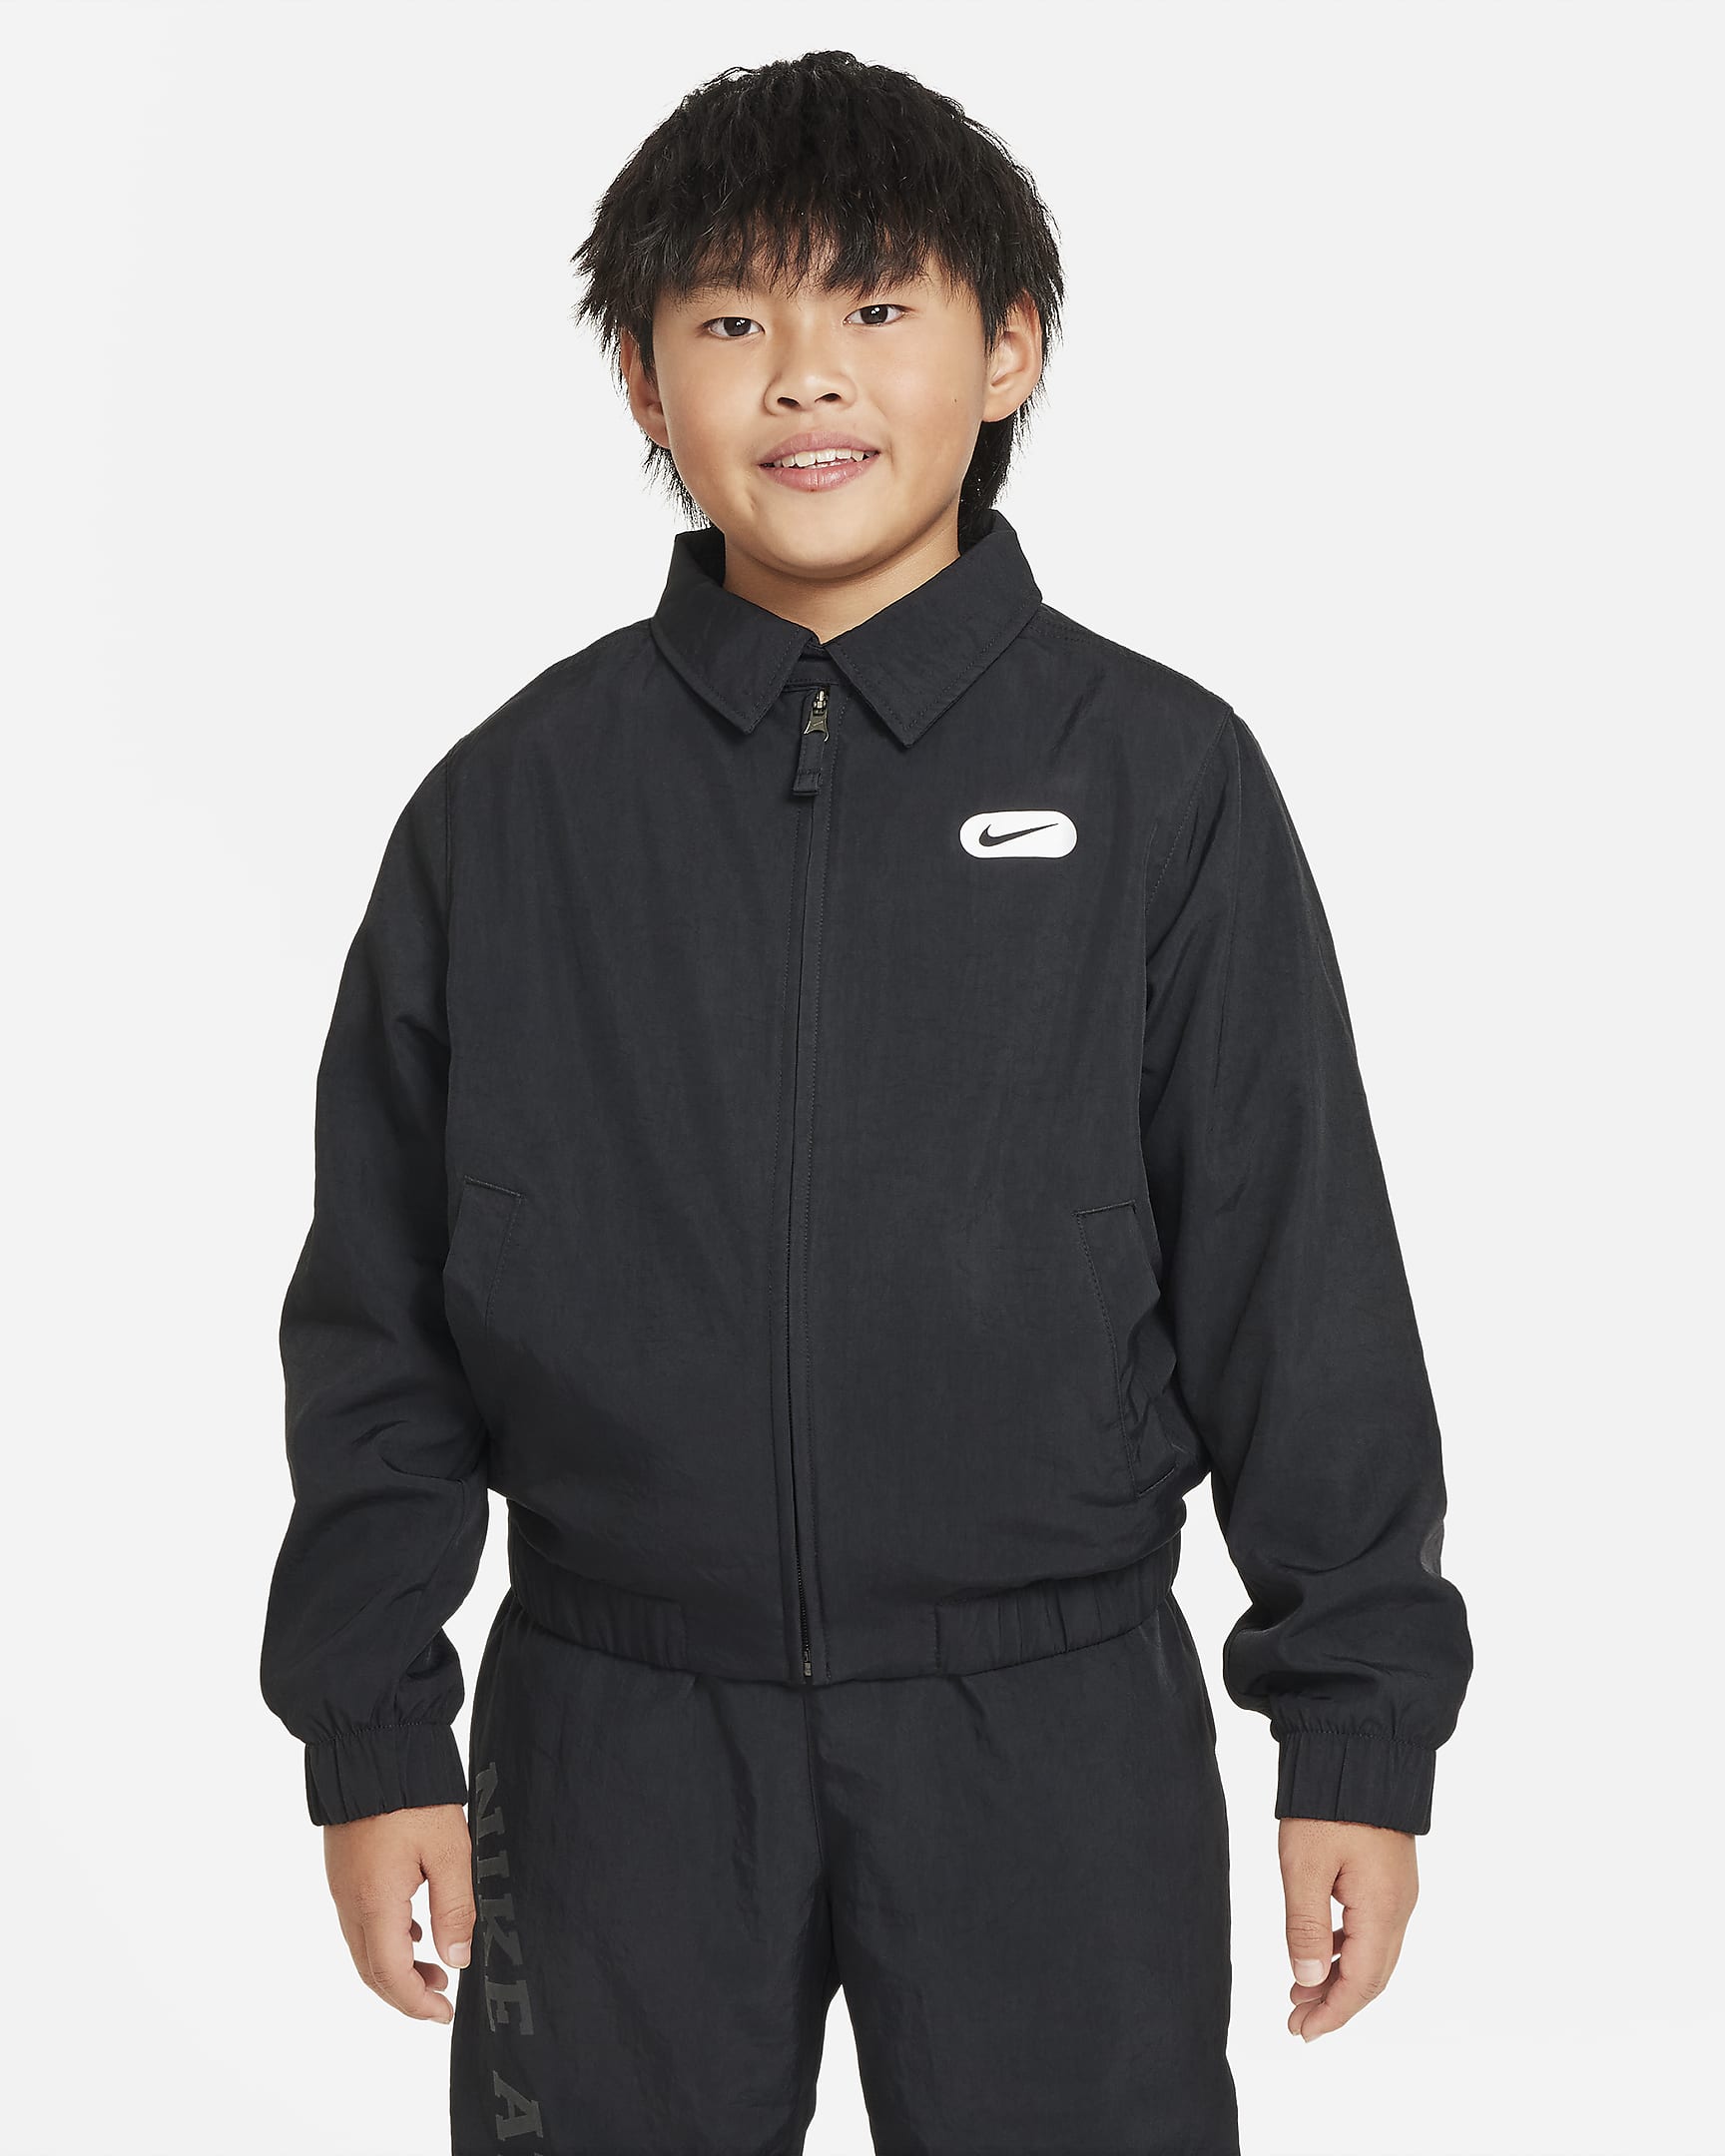 Nike Repel Athletics Older Kids' (Boys') Jacket. Nike IL